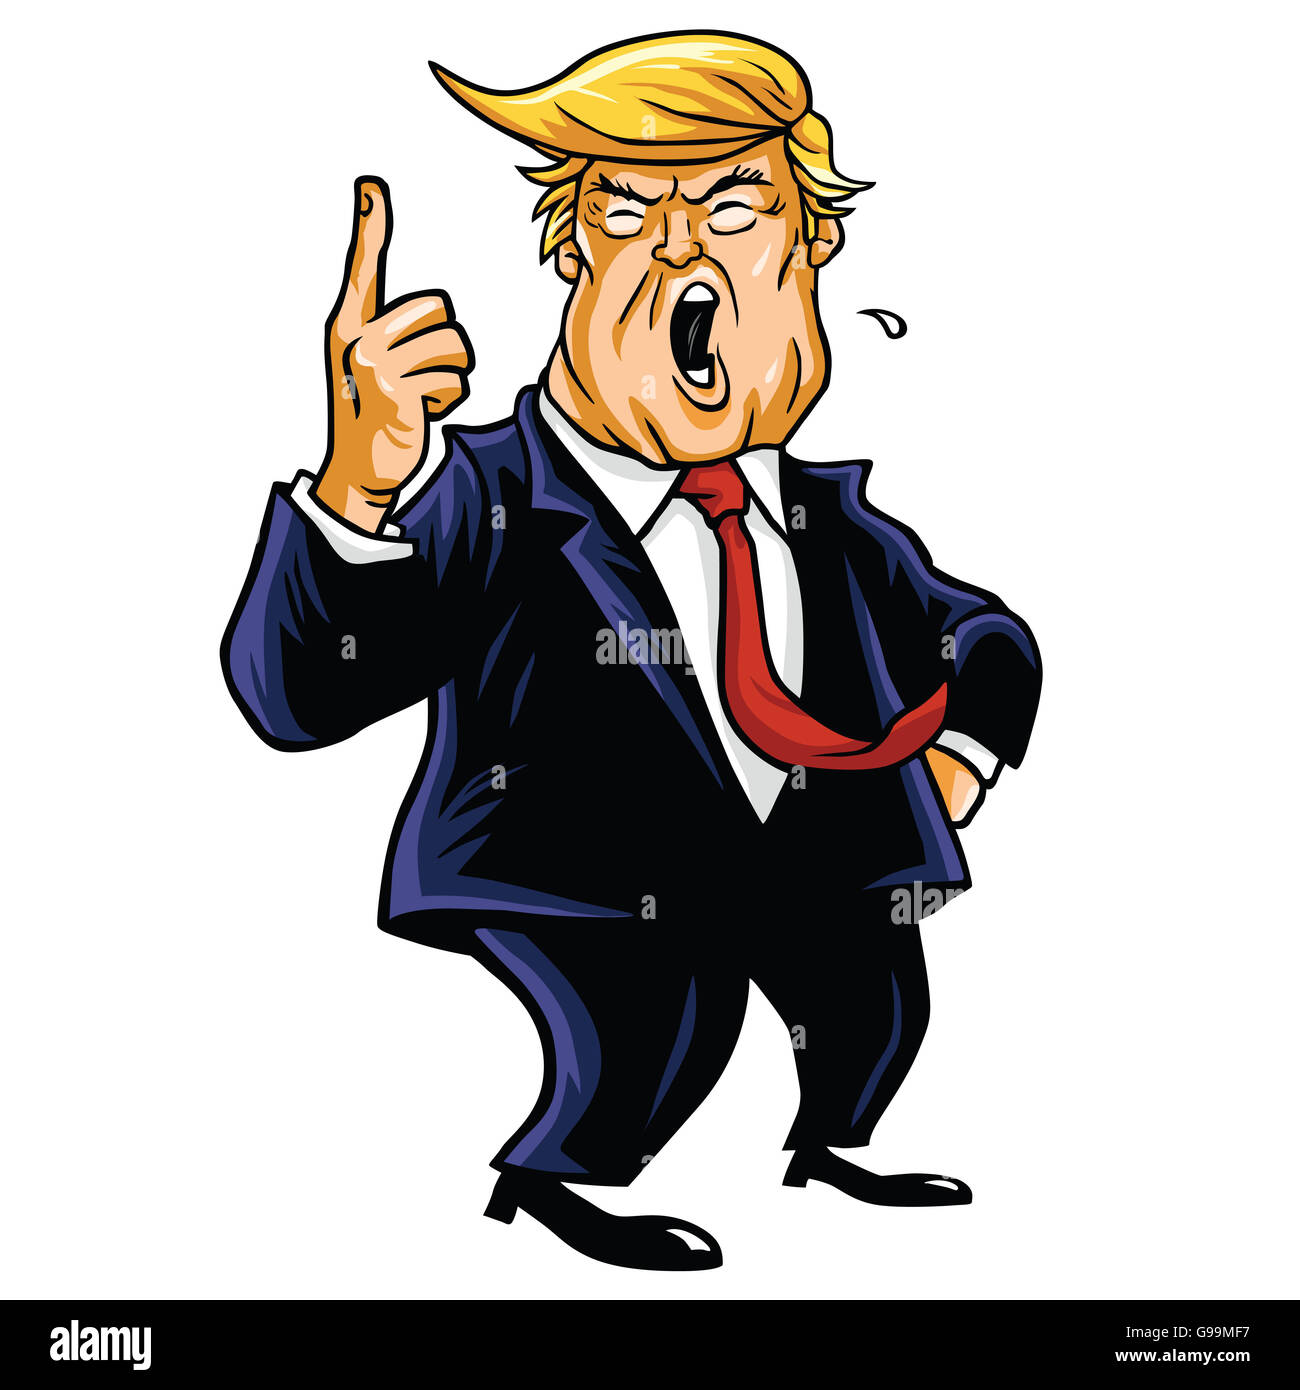 Donald Trump Cartoon gridando, sei licenziato! La caricatura Foto Stock